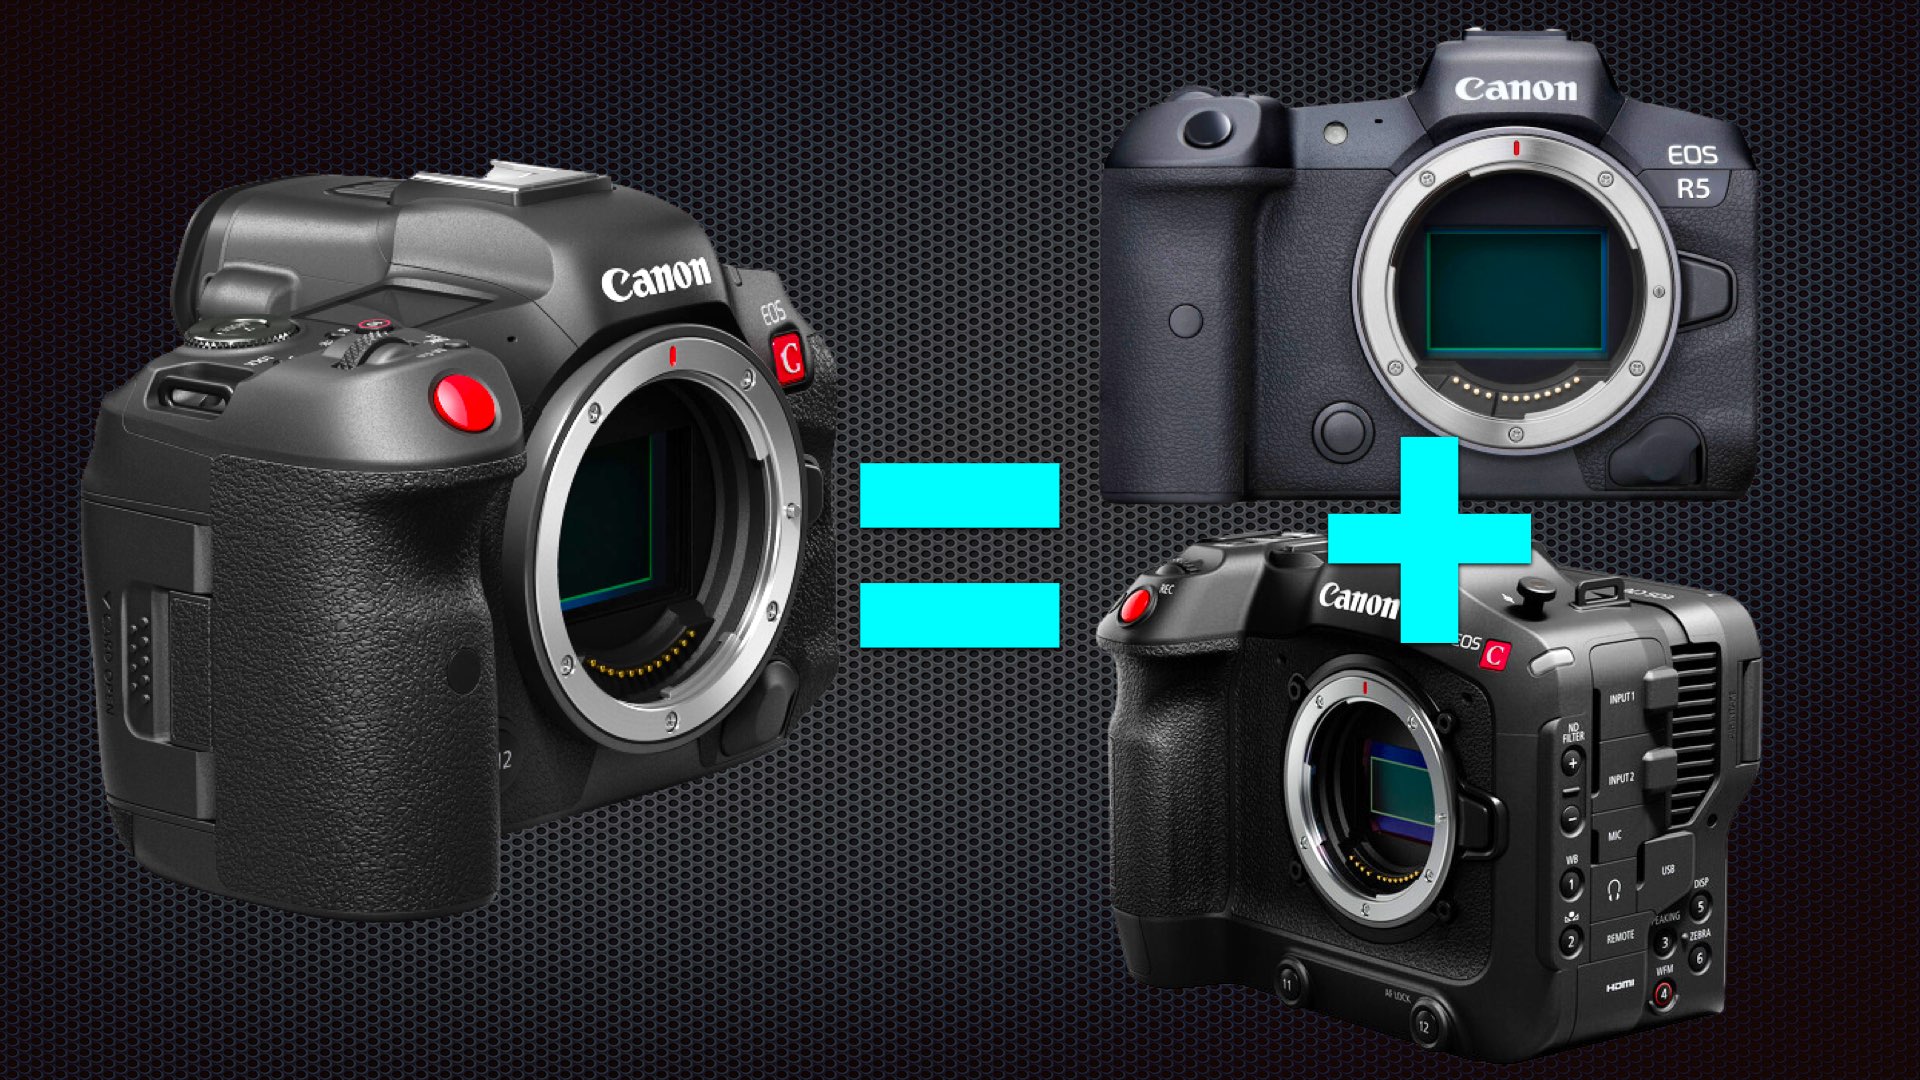 Canon a fabriqué un autre appareil photo hybride (R5 C) et a laissé les consommateurs perplexes